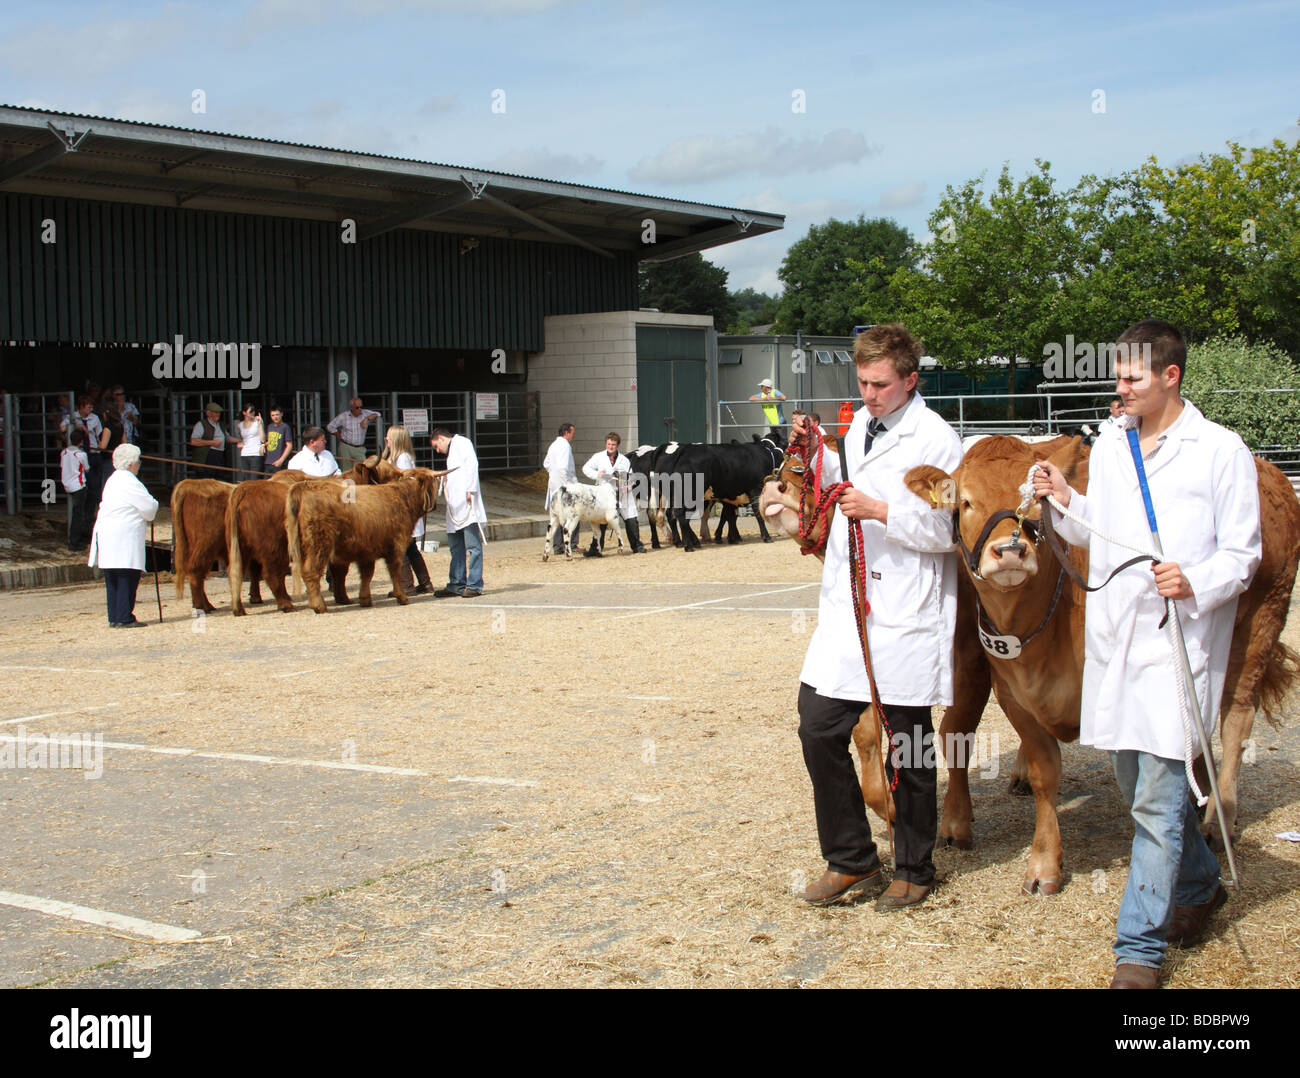 Les agriculteurs avec les bovins à l'Bakewell Show, Bakewell, Derbyshire, Angleterre, Royaume-Uni Banque D'Images